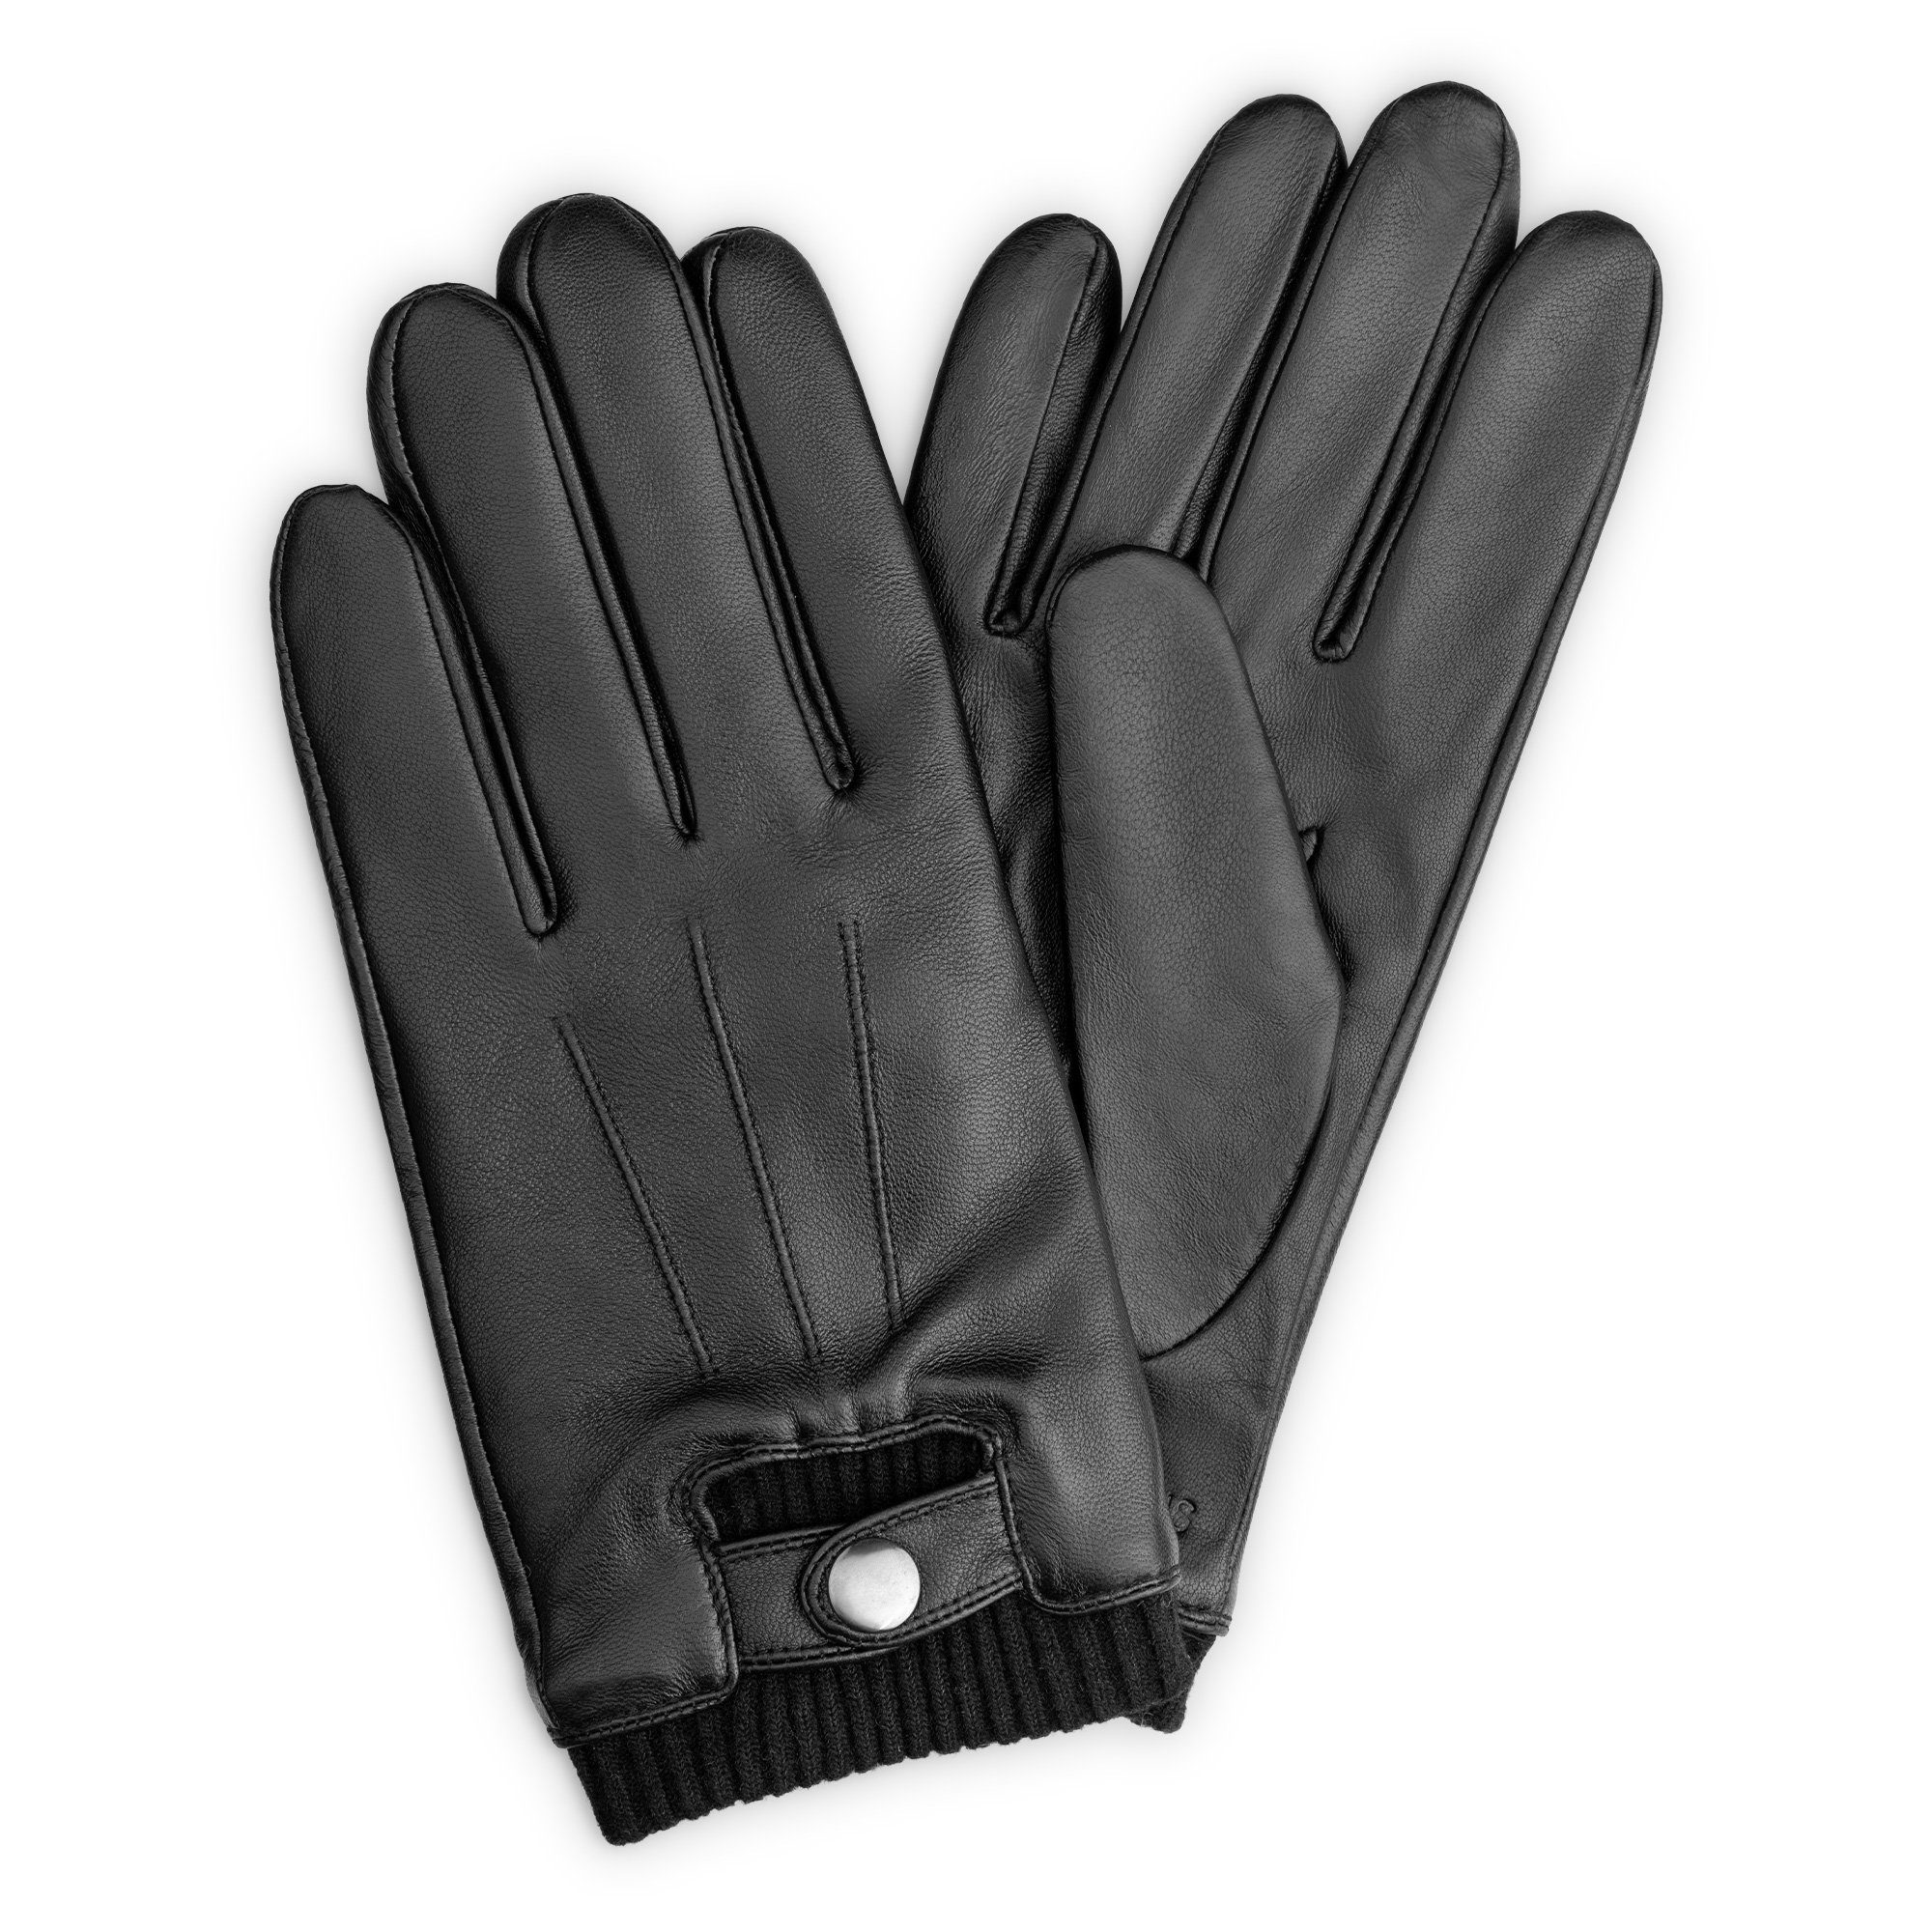 Navaris Lederhandschuhe Touchscreen Leder Handschuhe für Herren - Handschuhe  aus Nappa Lammleder mit Futter aus Wolle - Herren Lederhandschuhe - M  online kaufen | OTTO